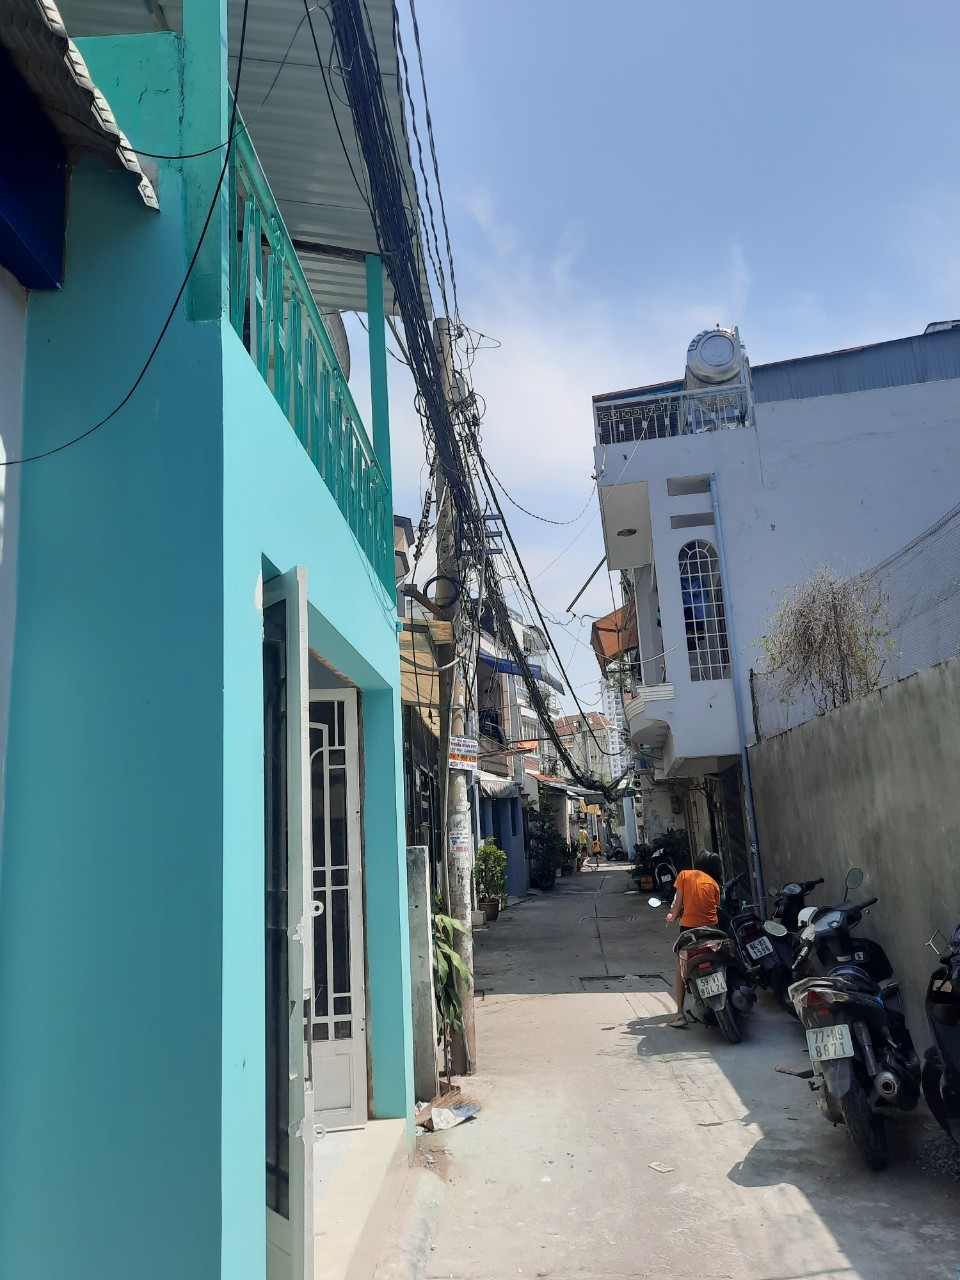 Cho thuê phòng trọ mới xây Lê Văn Lương, phường Tâng Kiểng quận 7. Giá 3.5 triệu/tháng